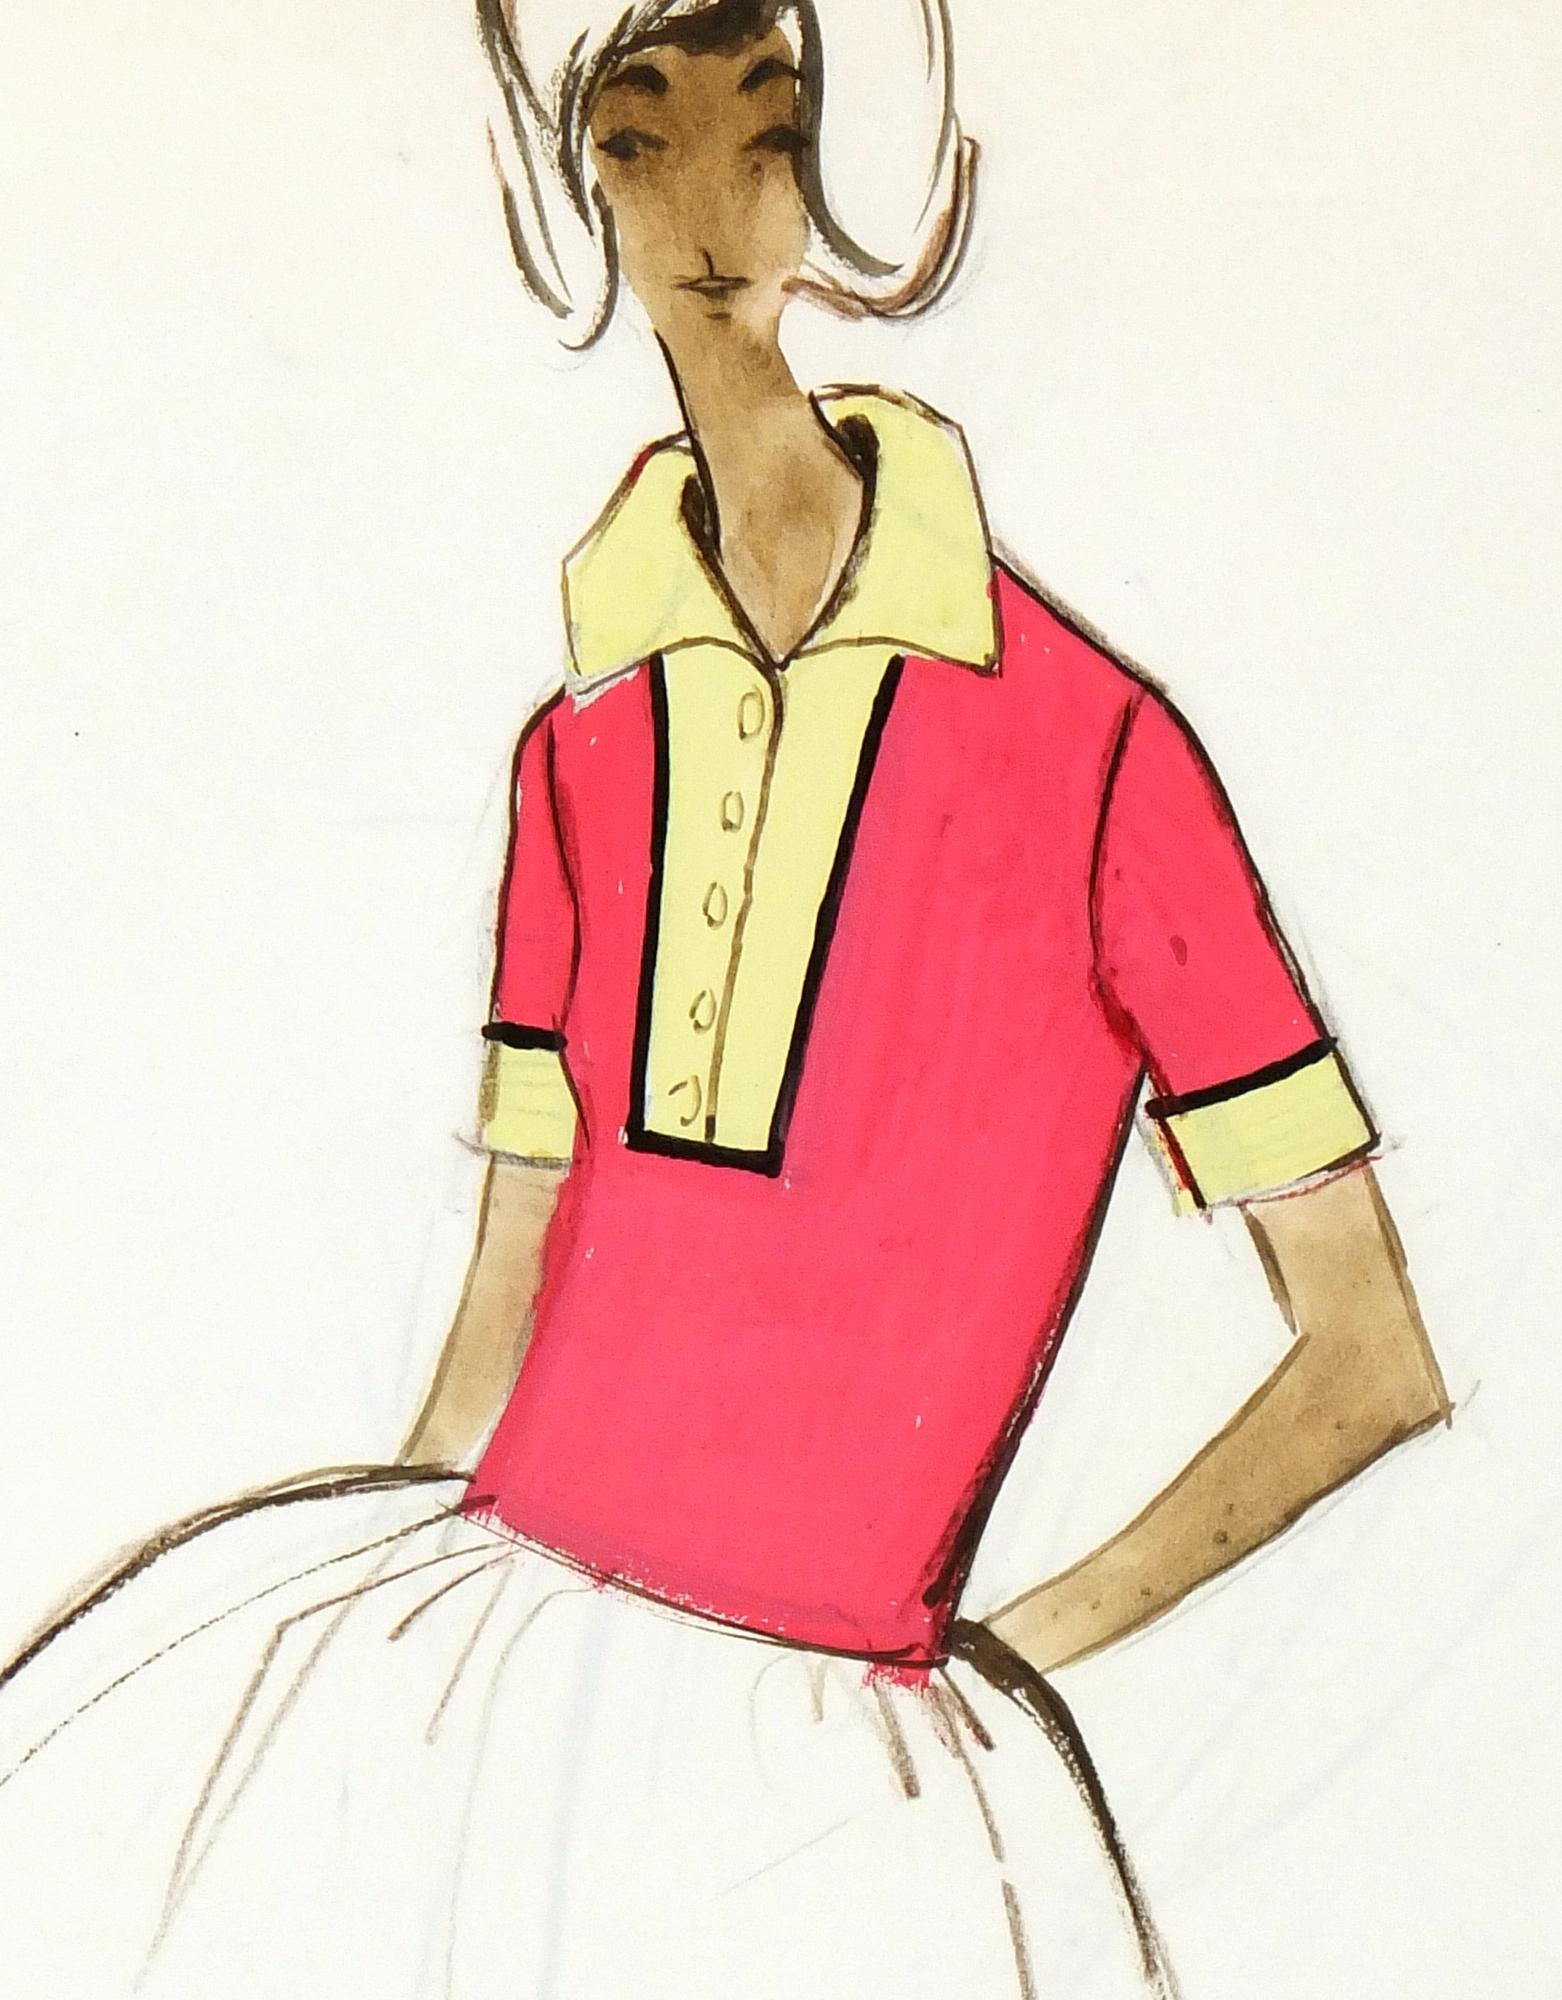 Vintage Balmain French Fashion Sketch - Couture Tennis Dress, c. 1960 - Art by Pierre Balmain